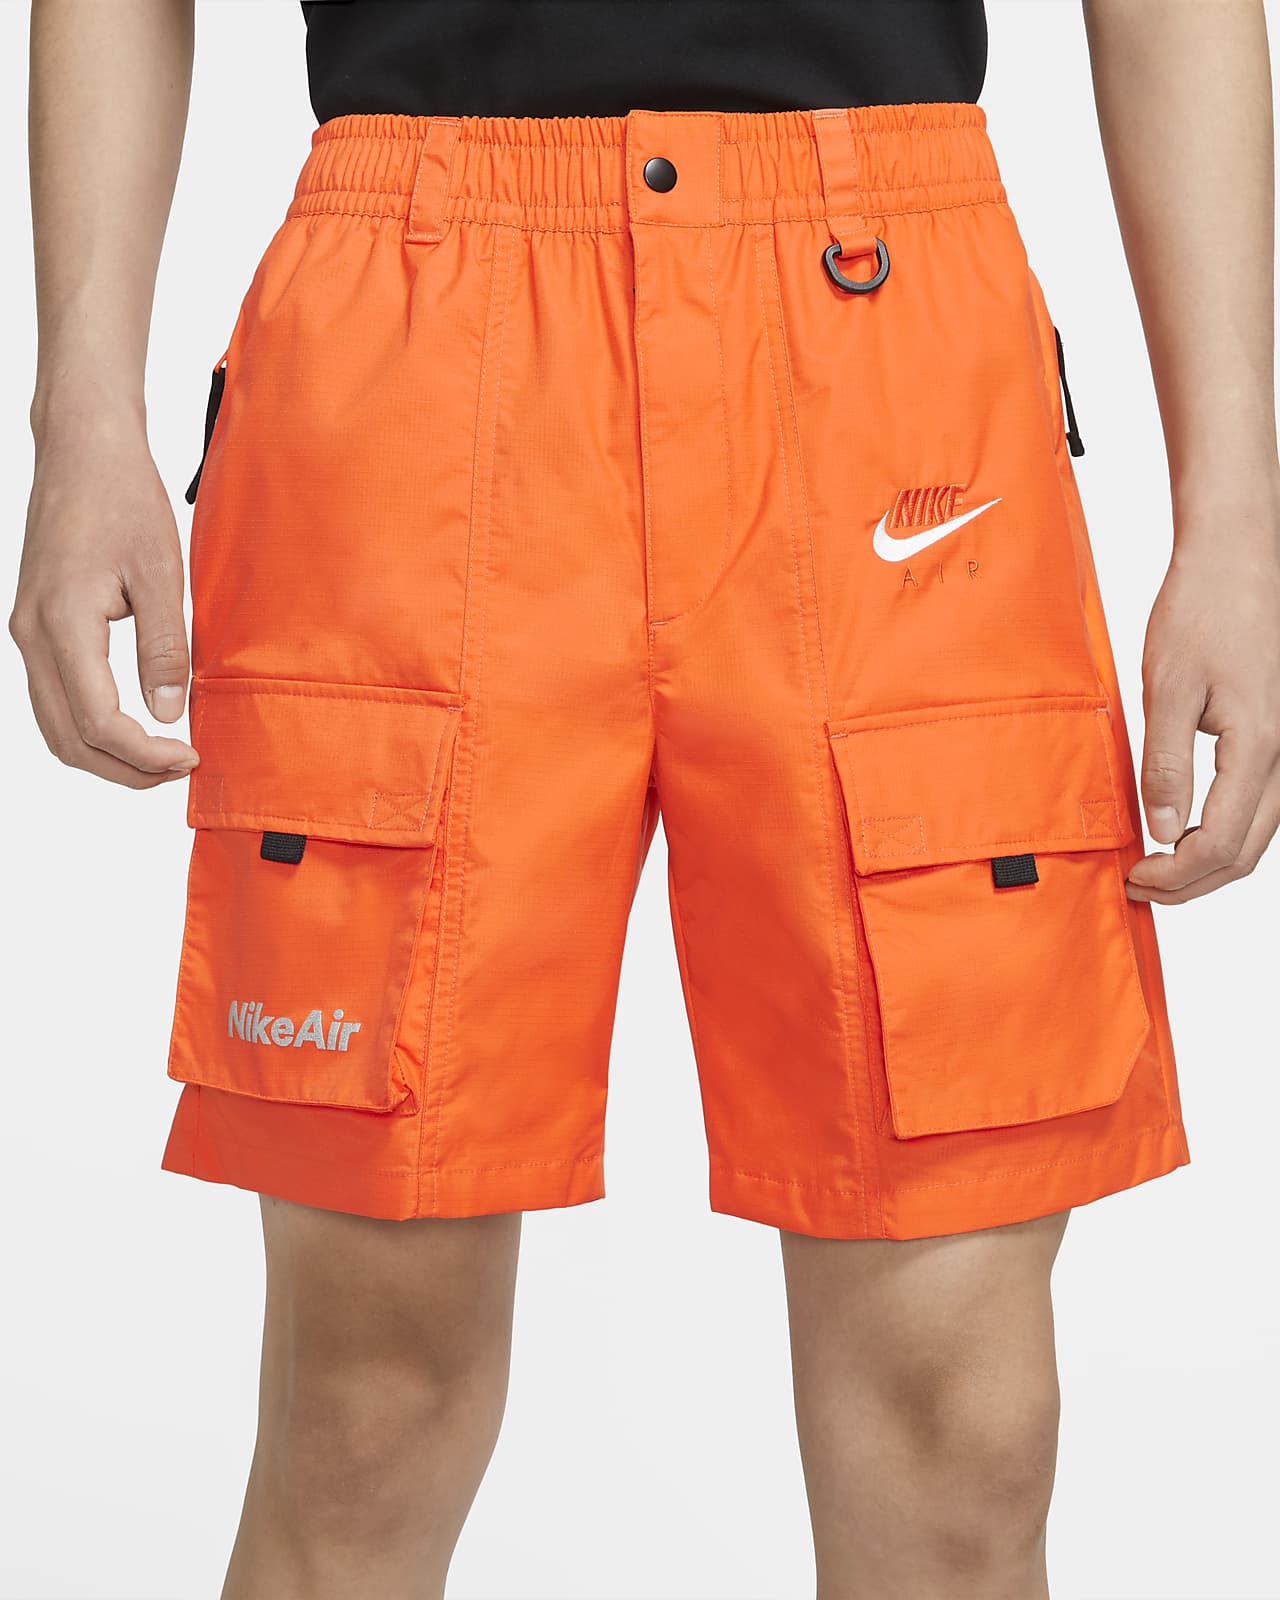 Nike Air Men's Shorts. Nike.com